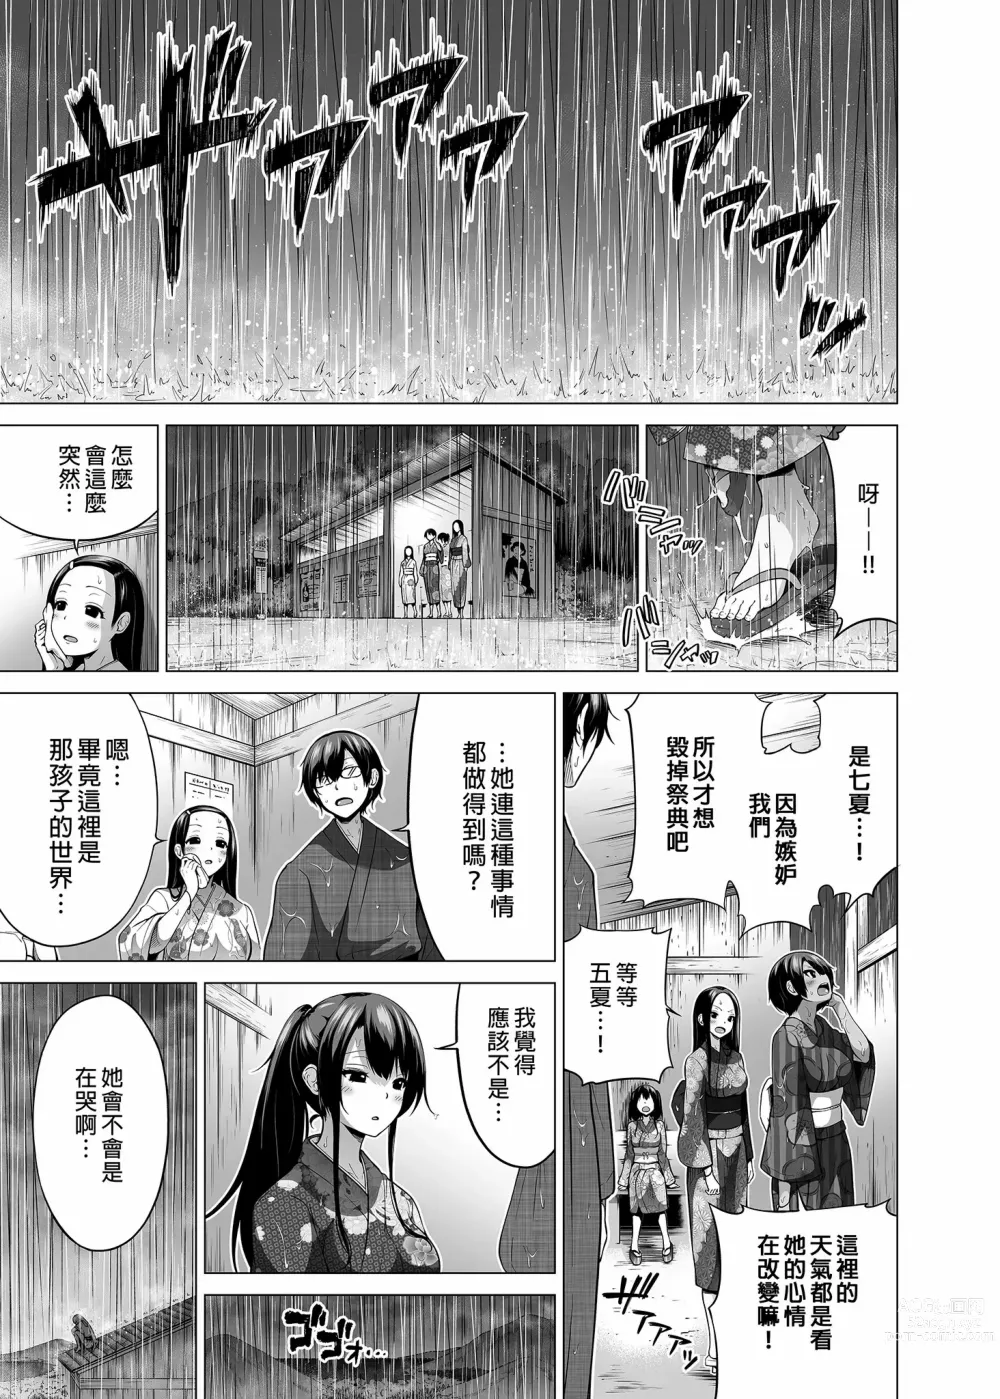 Page 527 of doujinshi 三姐妹1-2 七夏1-6 无马